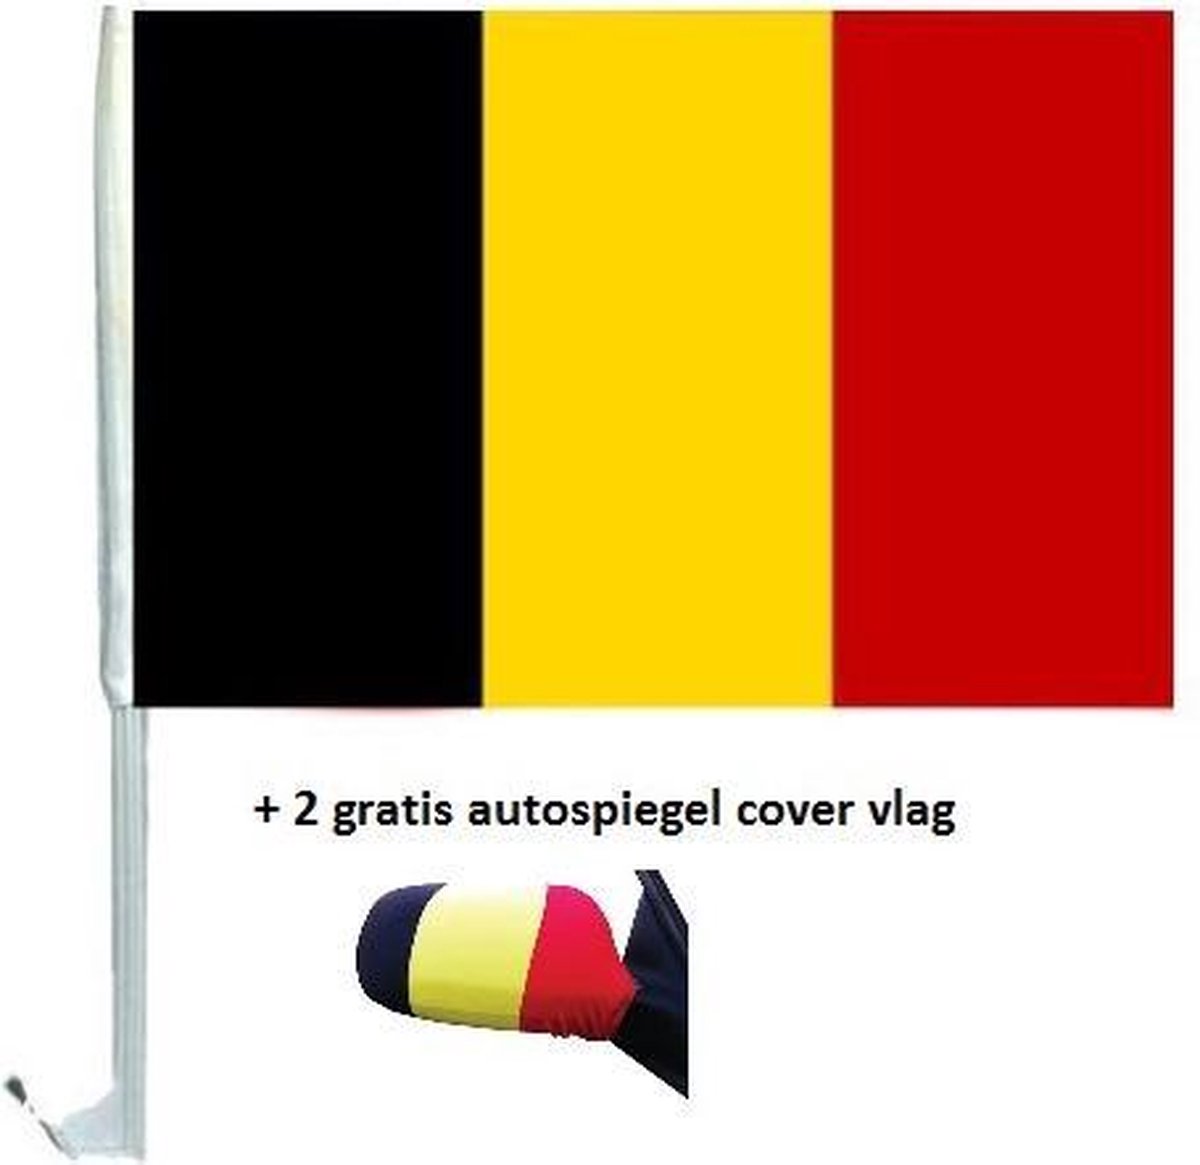 Autospiegel cover Nederlandse vlag